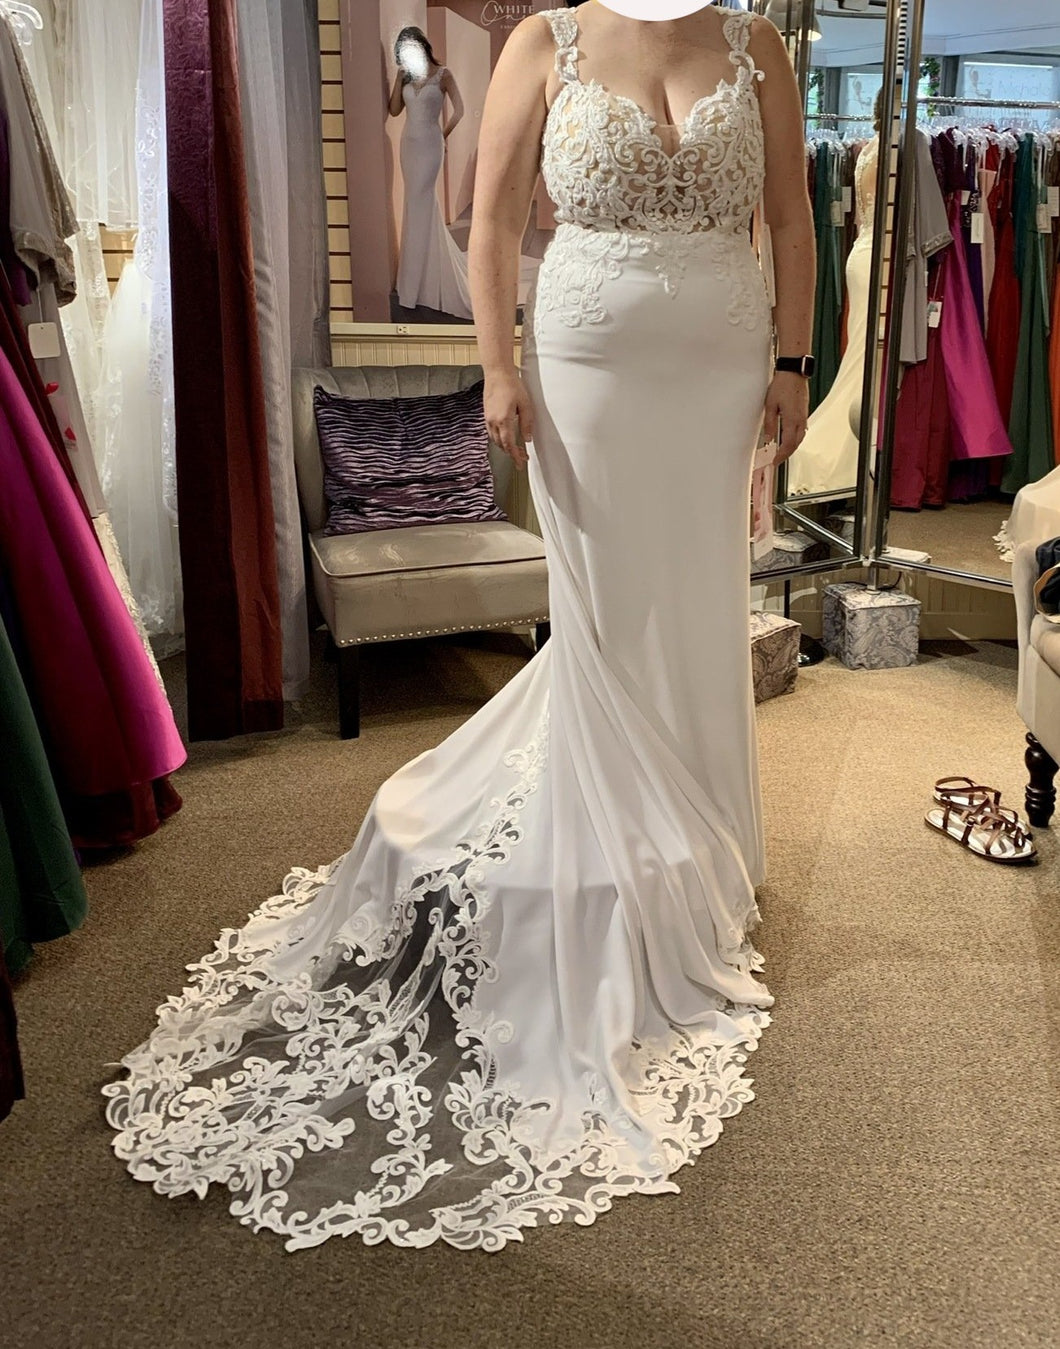 W1 'Mermaid' wedding dress size-14 NEW